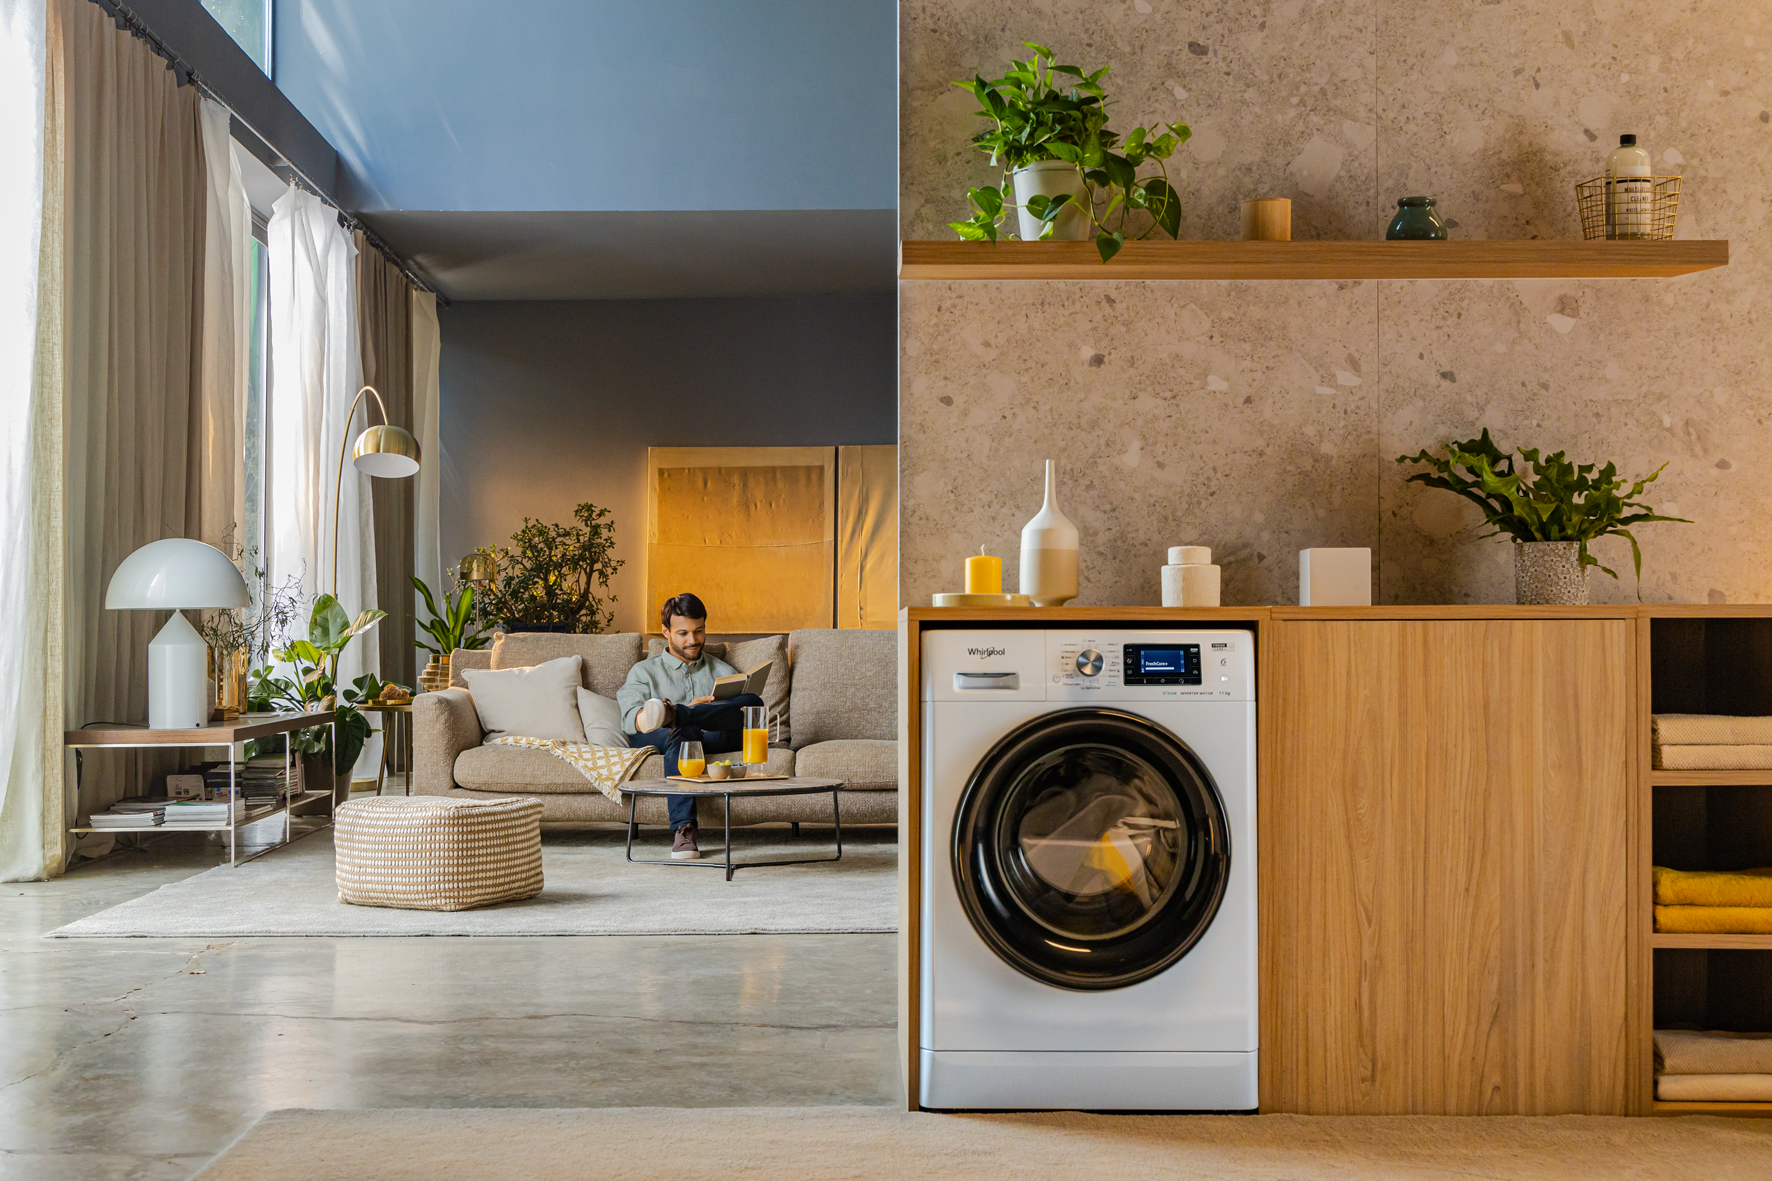 Whirlpool presenta su nueva lavadora FreshCare+ de Clase A con 11kg de capacidad